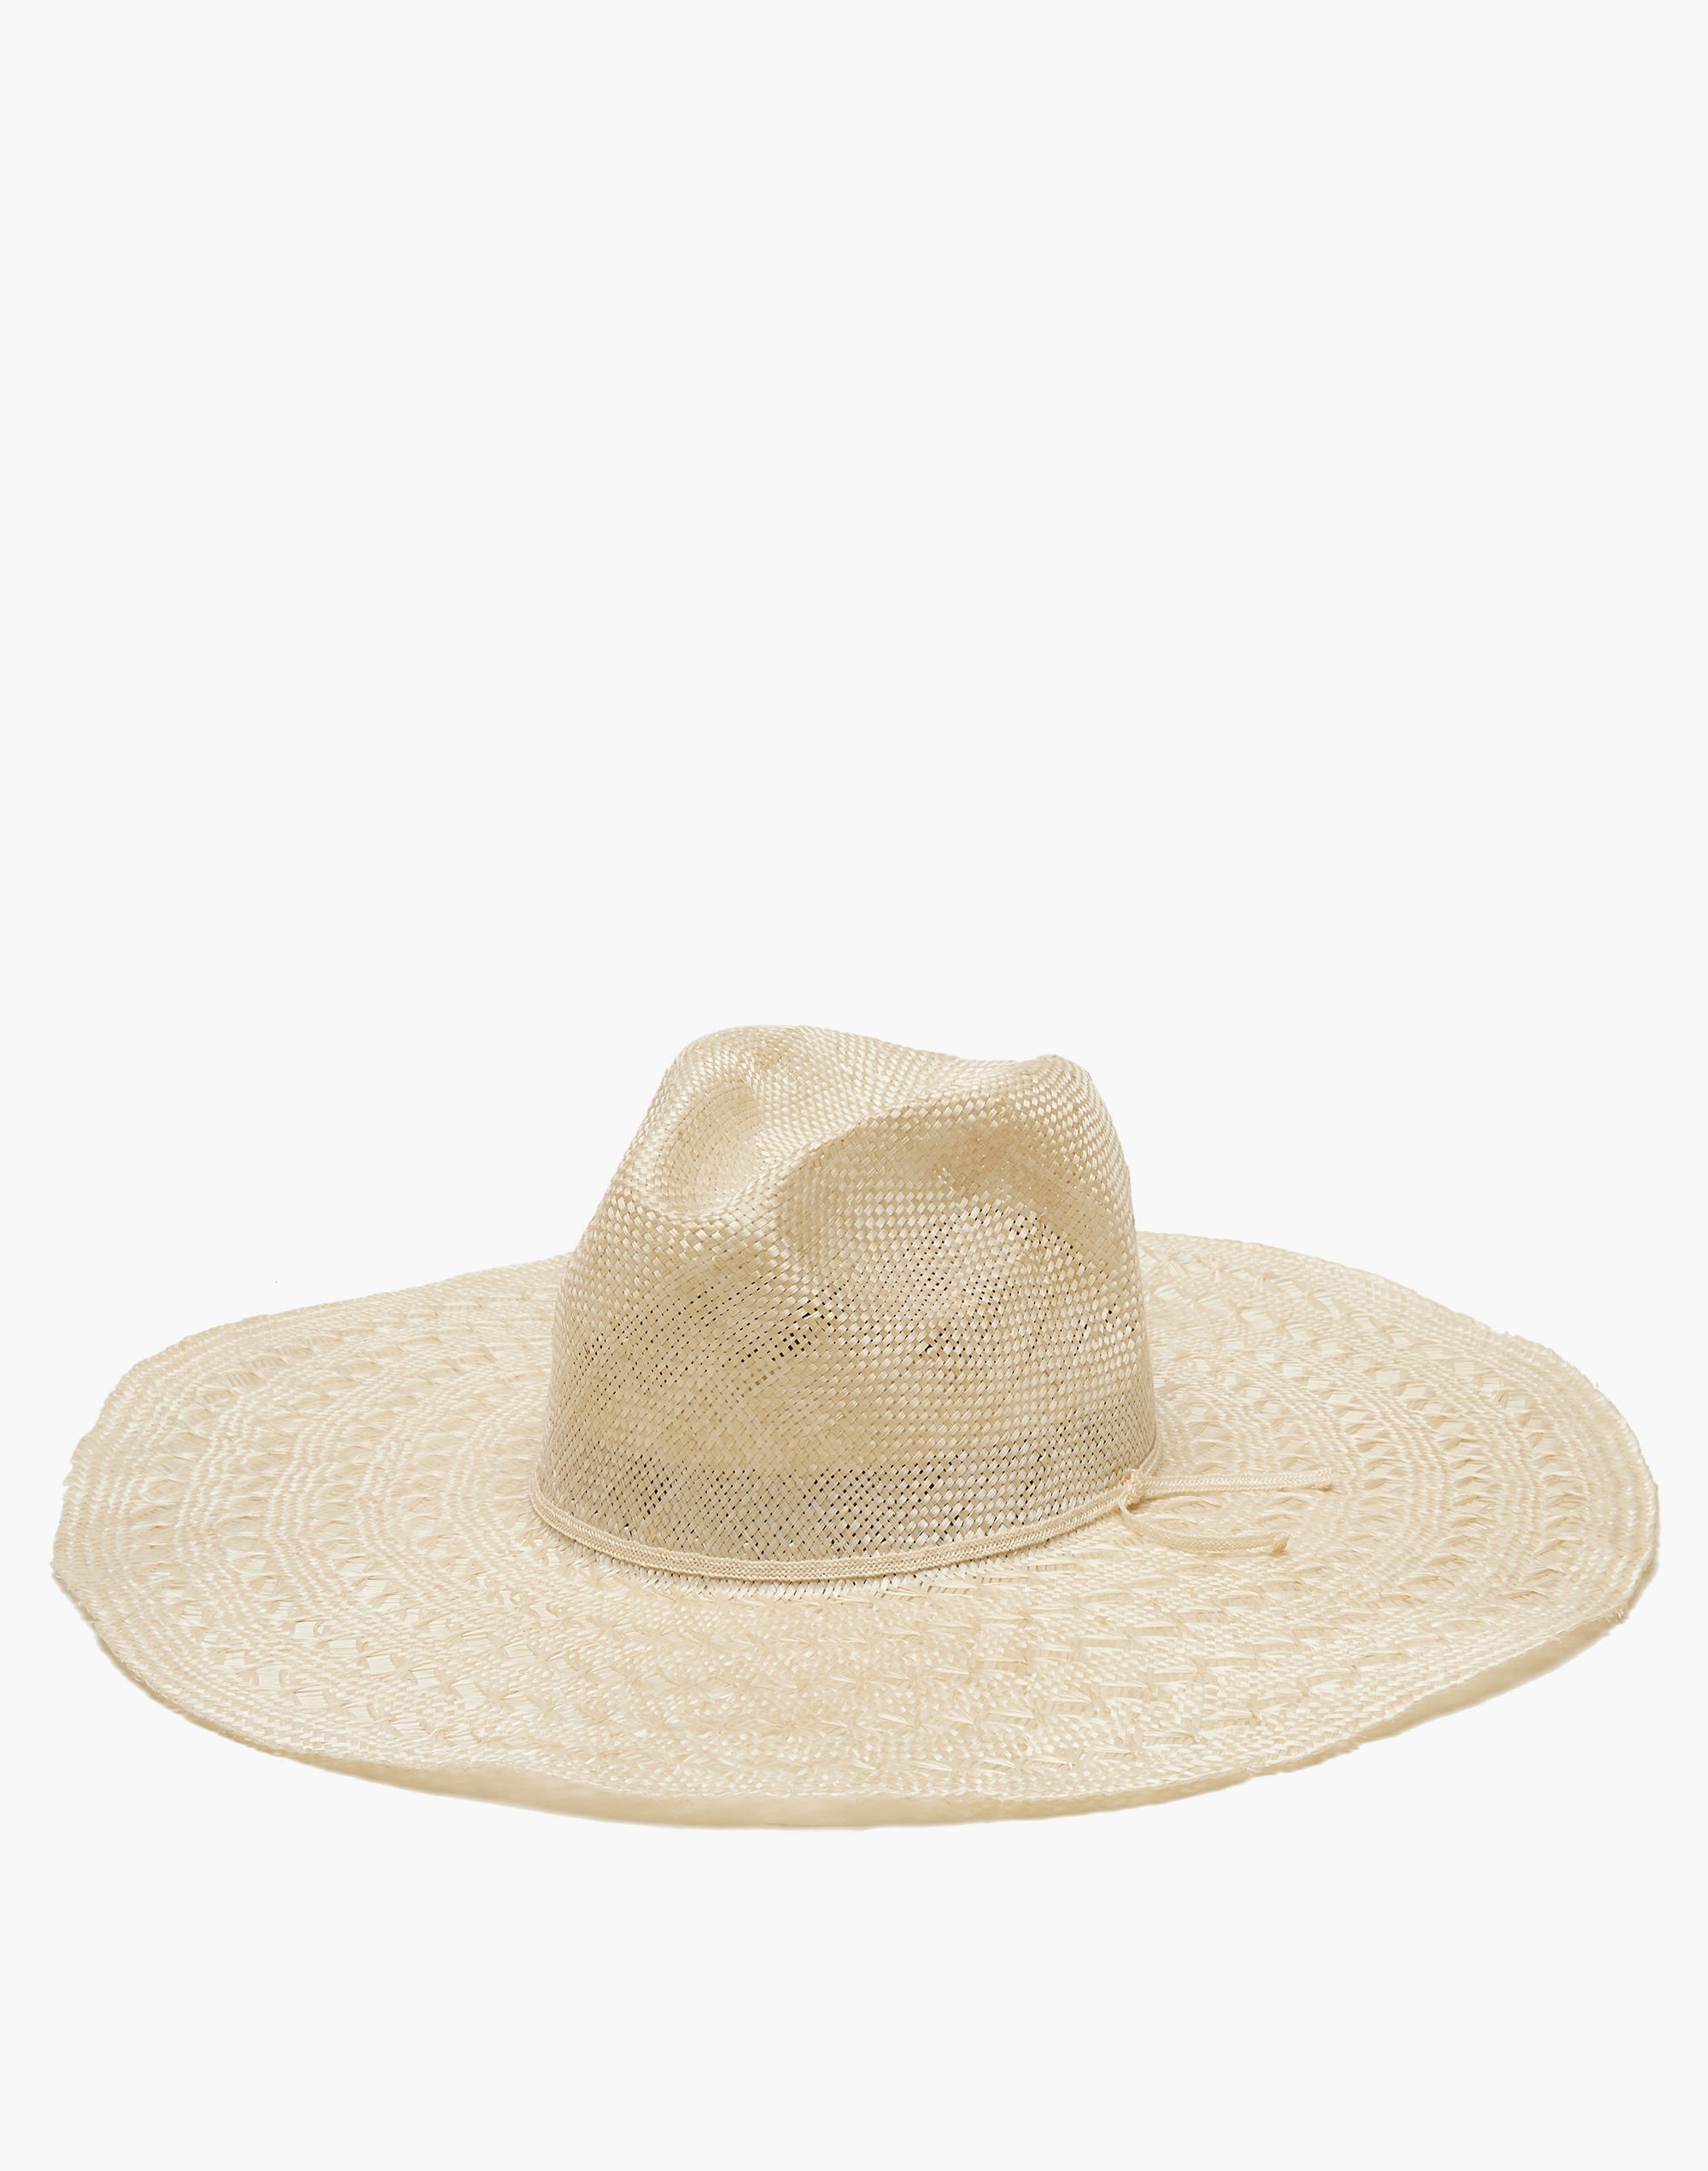 WYETH™ Straw Merrick Hat